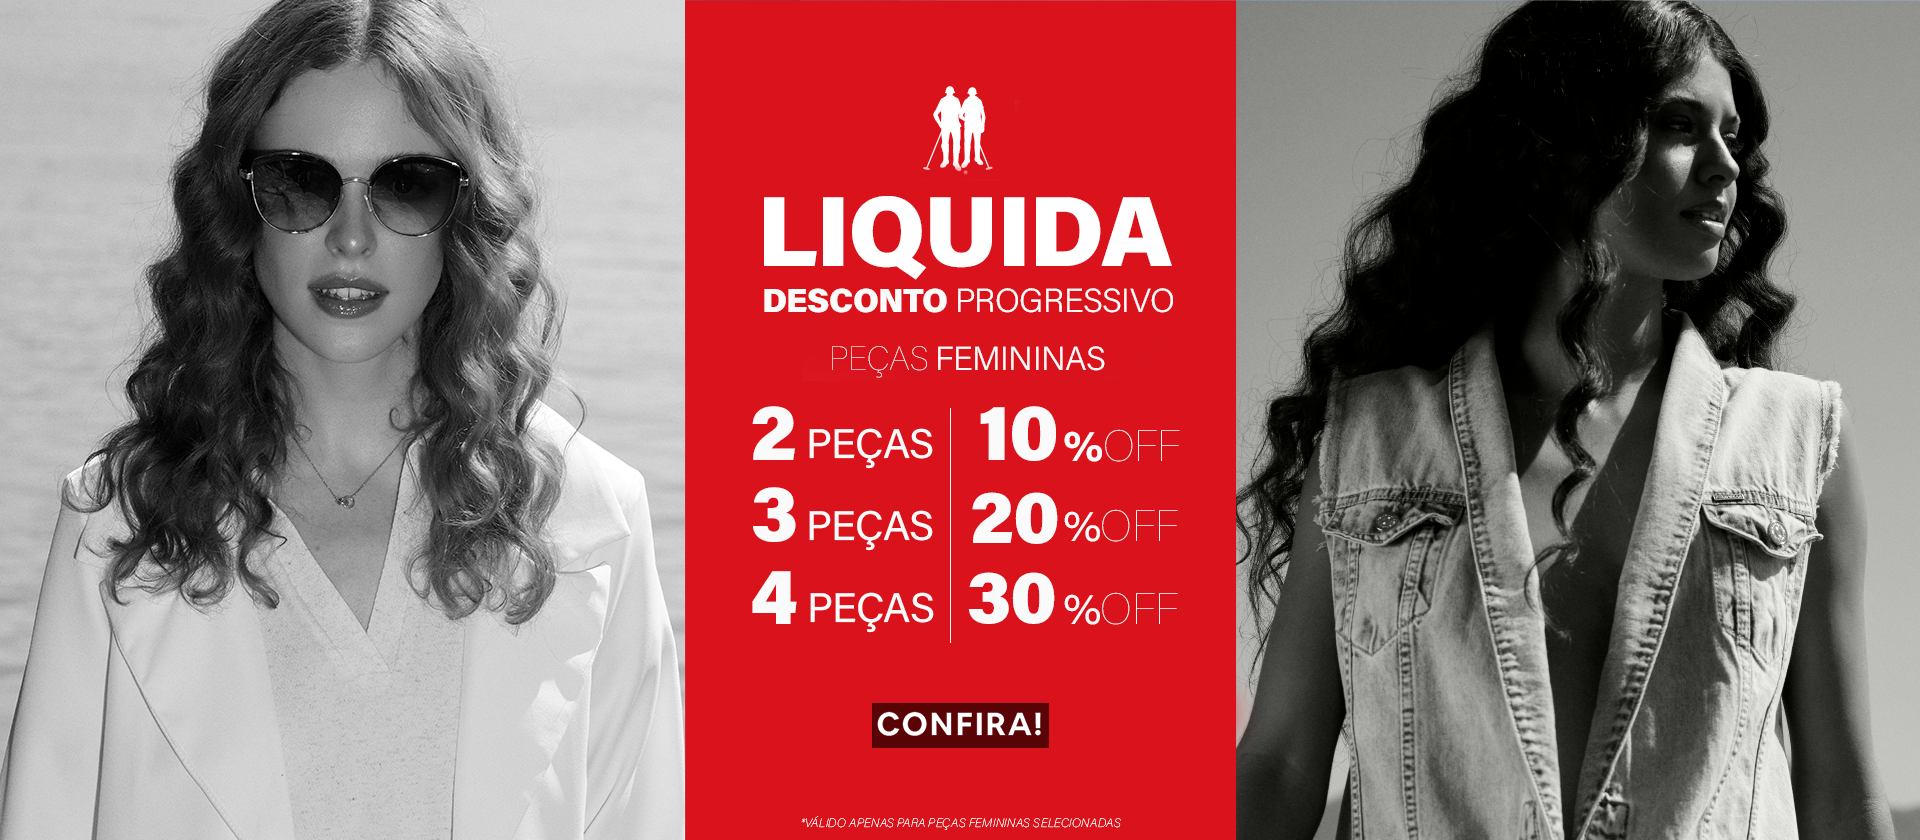 Liquida - Desconto Progressivo Fem 1920x840